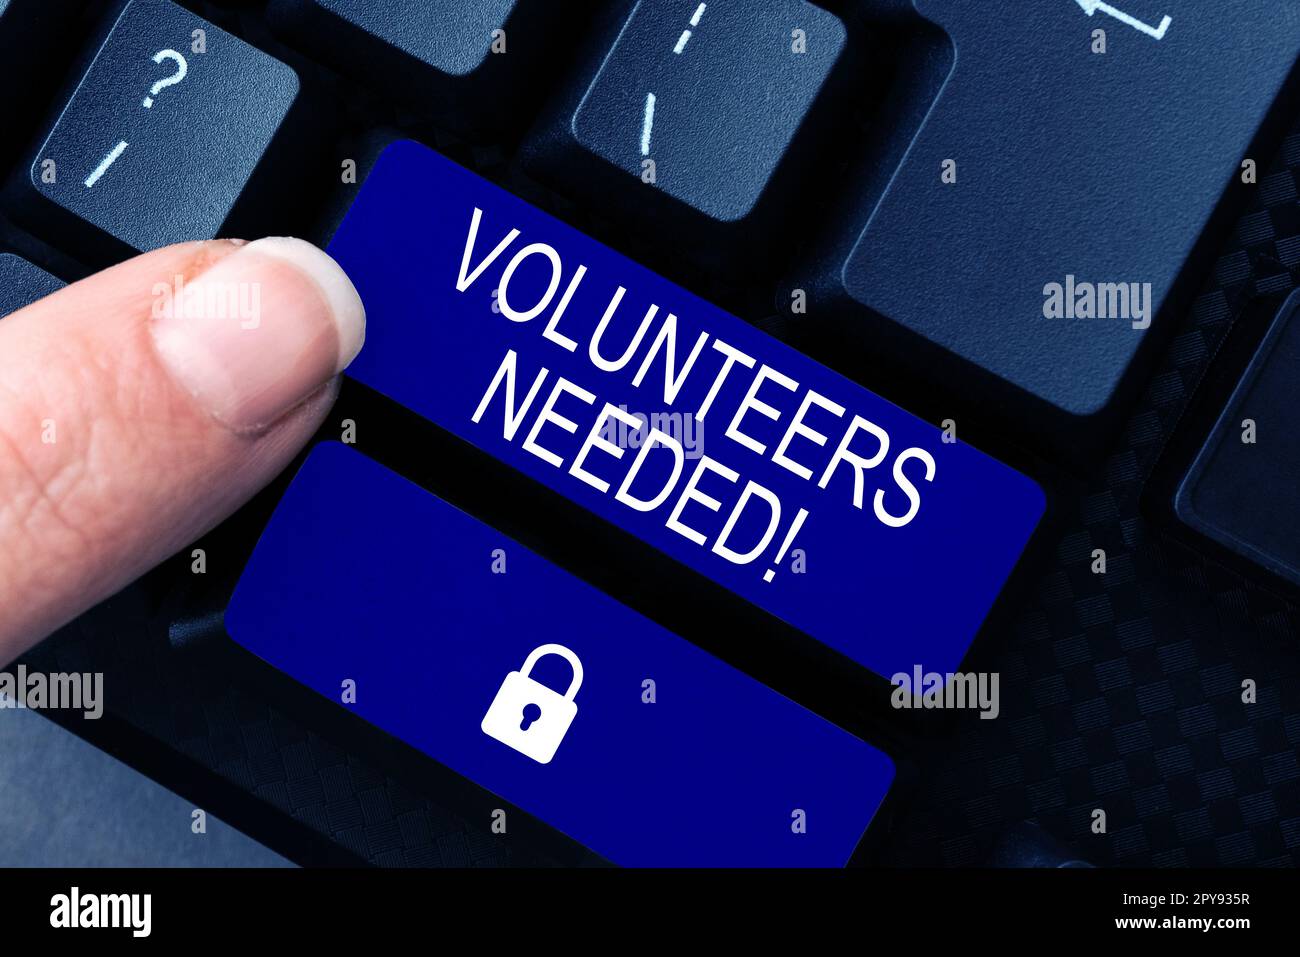 Présentation conceptuelle volontaires nécessaires. Concept d'entreprise social Community Charity Volunteerism Banque D'Images